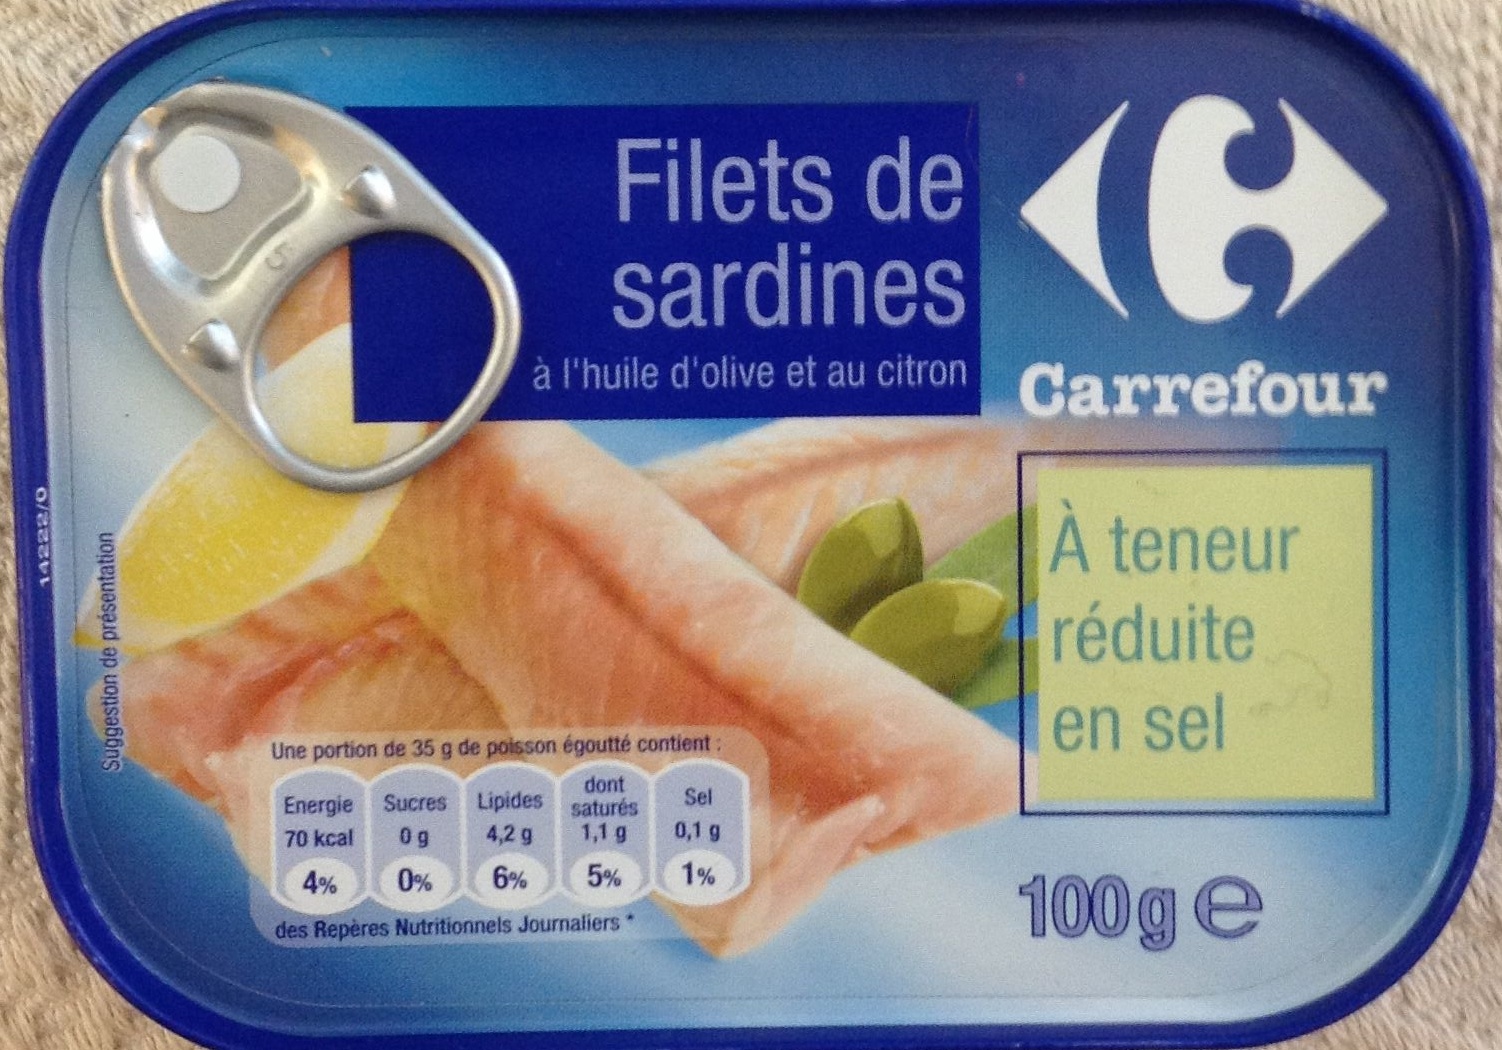 Filets de sardines à huile d'olive et au citron (À teneur réduite en sel) - Product - fr